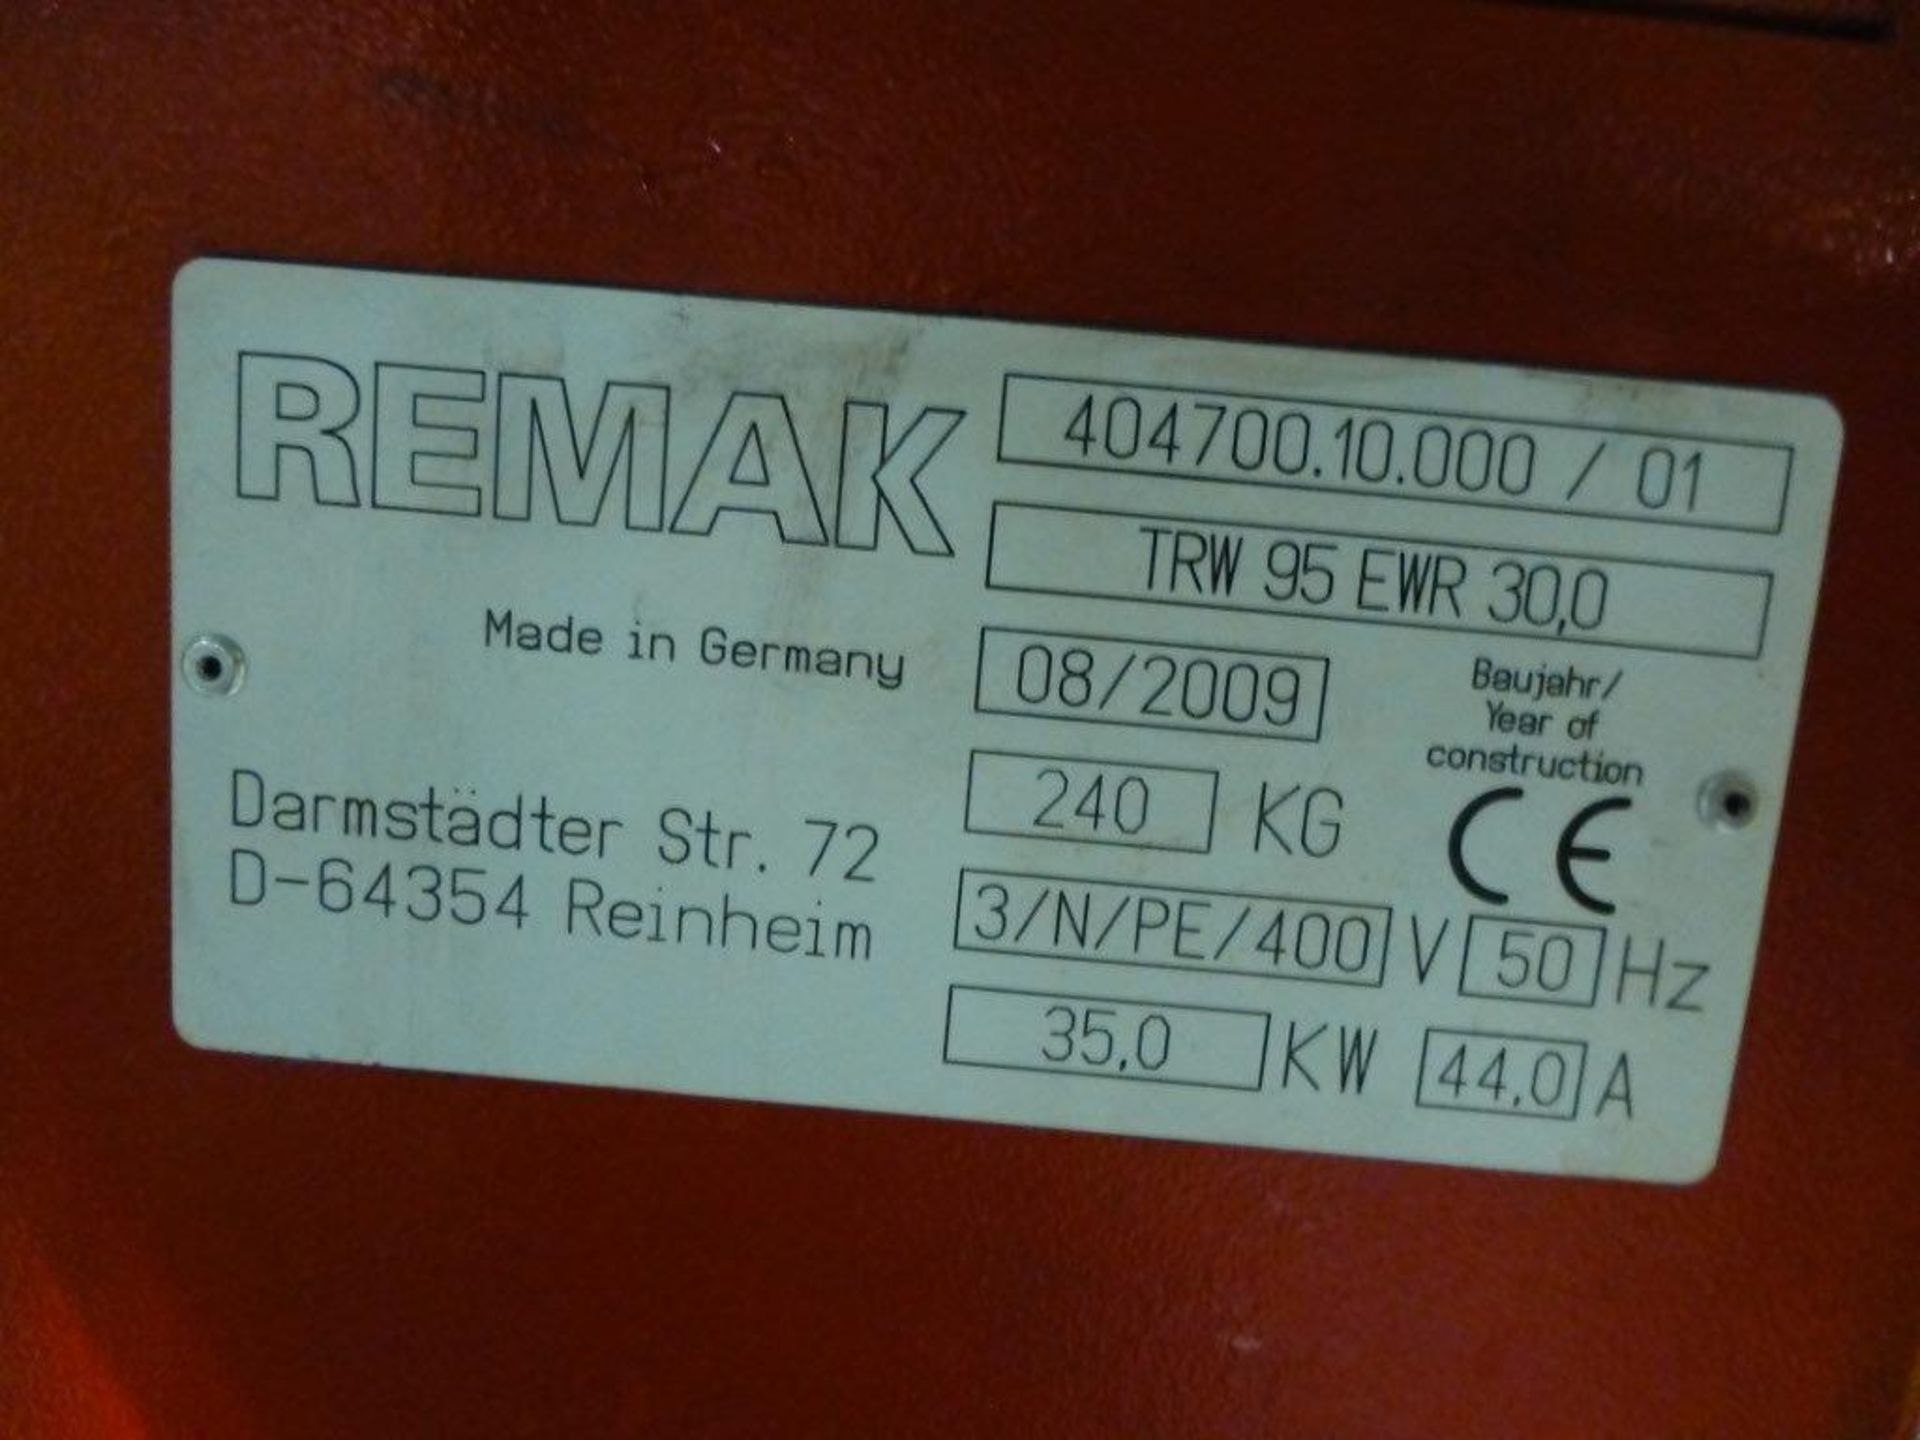 Remak TRW95/EWR 30.0 temperature control unit, serial No 404700.10.000/01 (A Risk Assessment and - Bild 2 aus 2